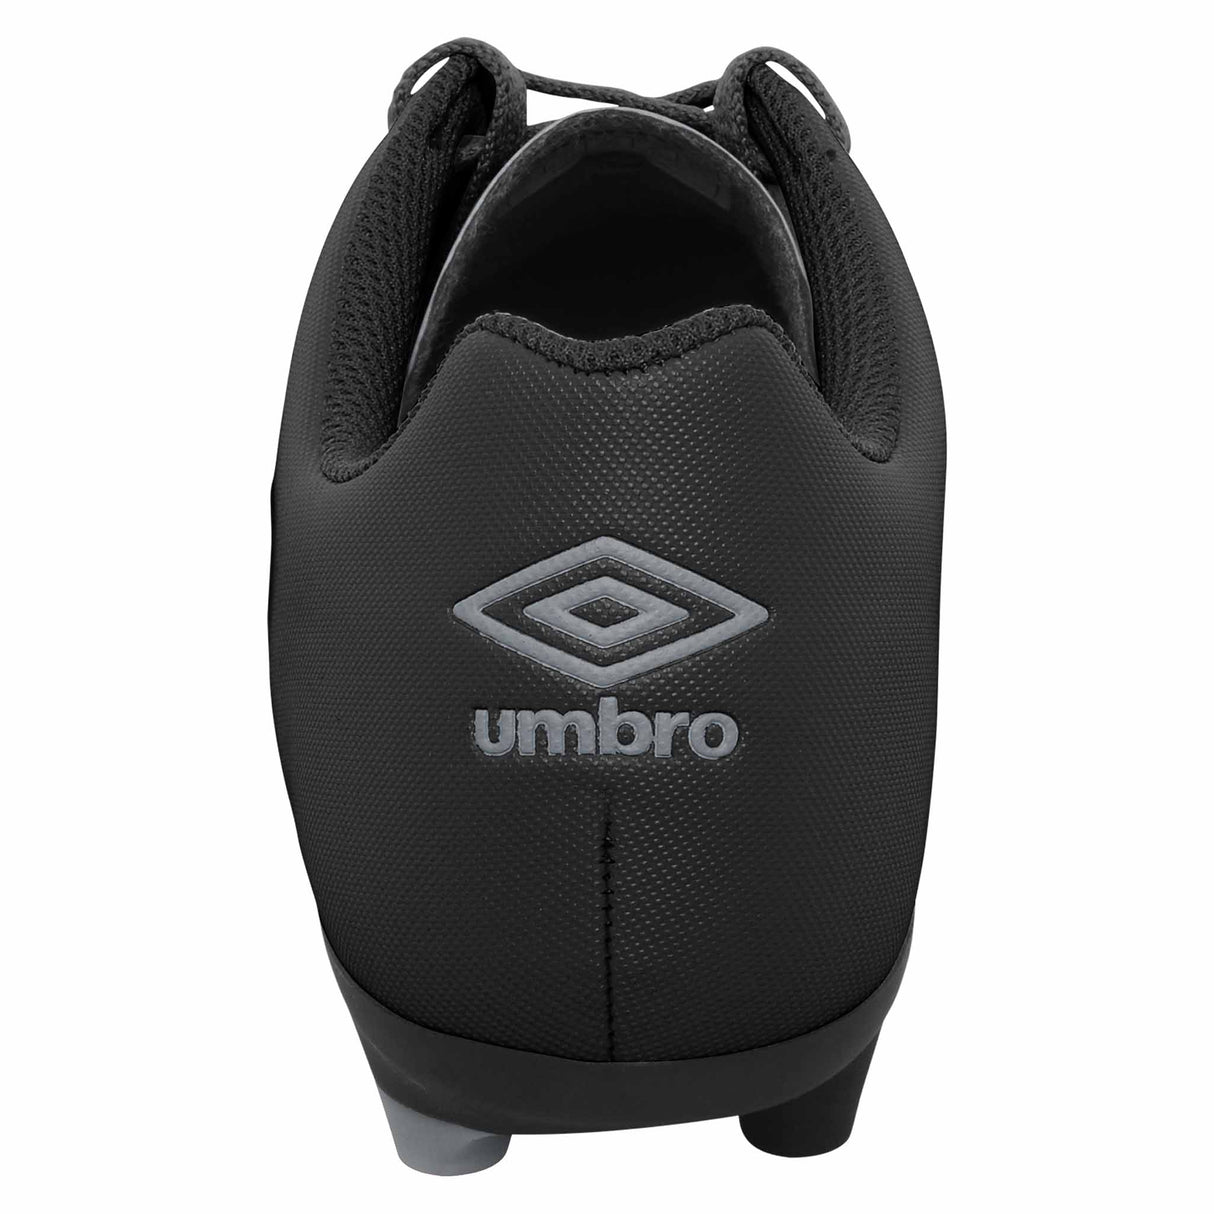 Umbro Classico XI FG Junior chaussure de soccer pour enfant - Noir / Gris